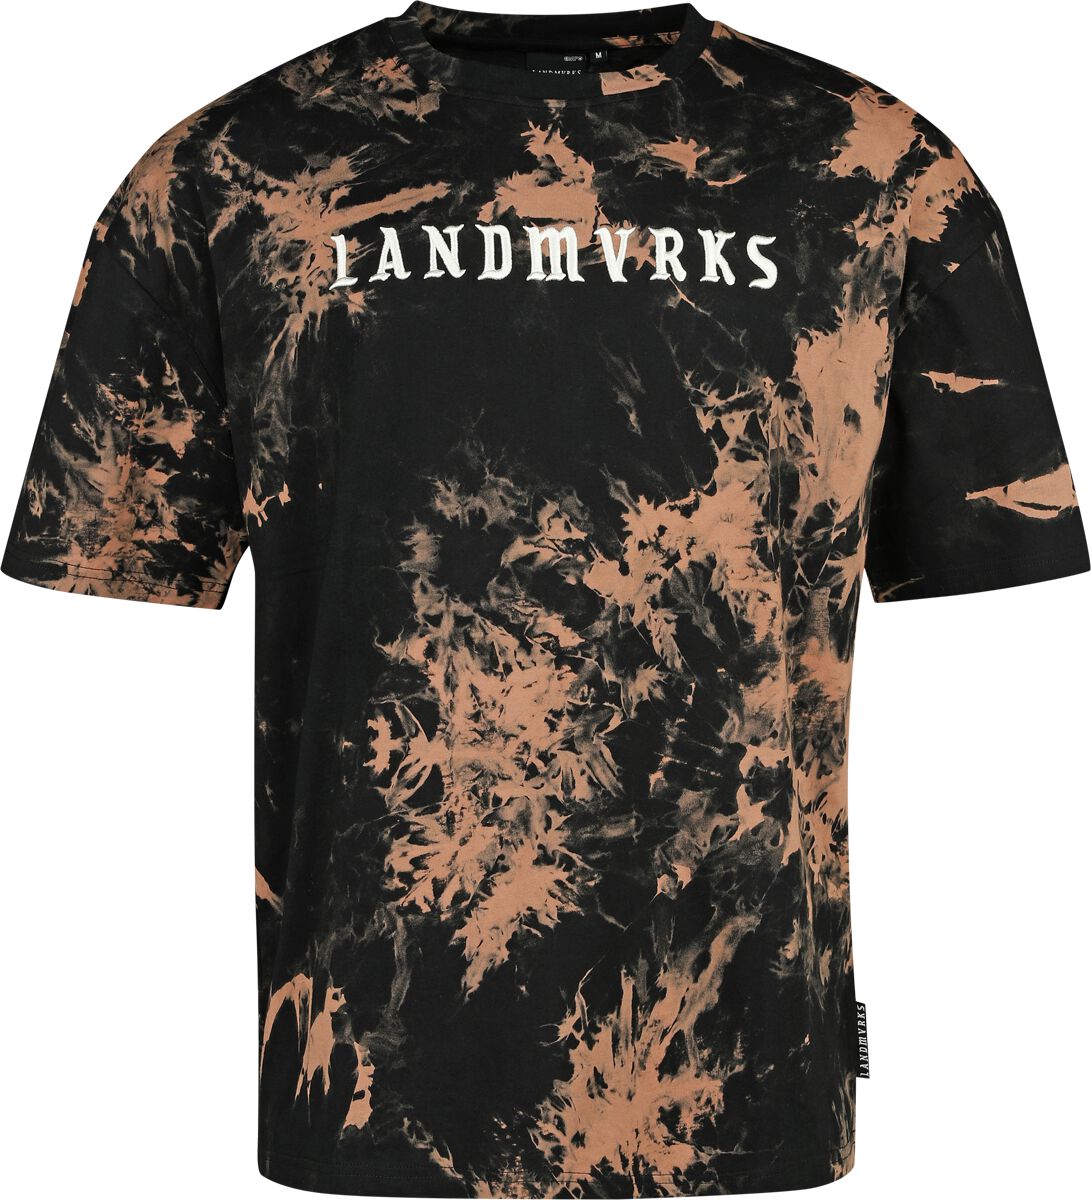 Landmvrks EMP Signature Collection T-Shirt schwarz braun in M